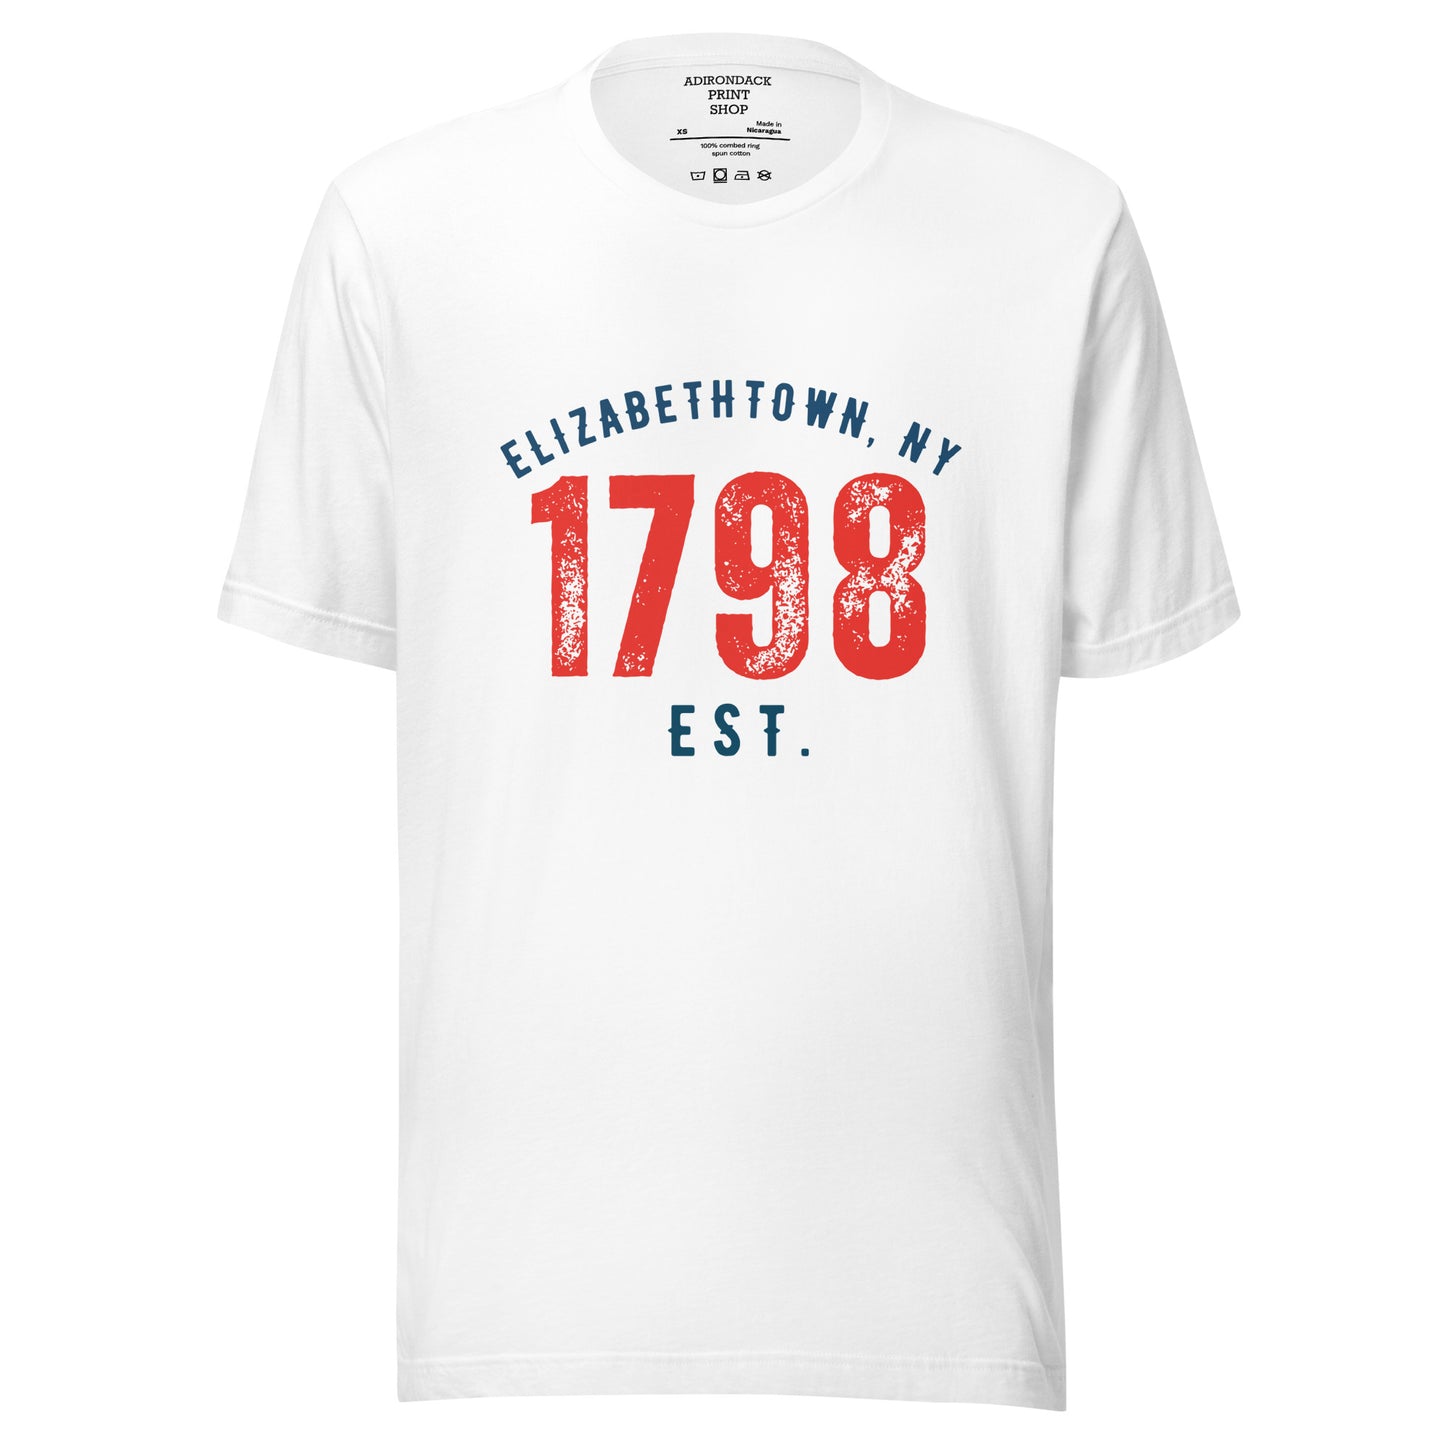 Elizabethtown, NY 1798 Unisex t-shirt